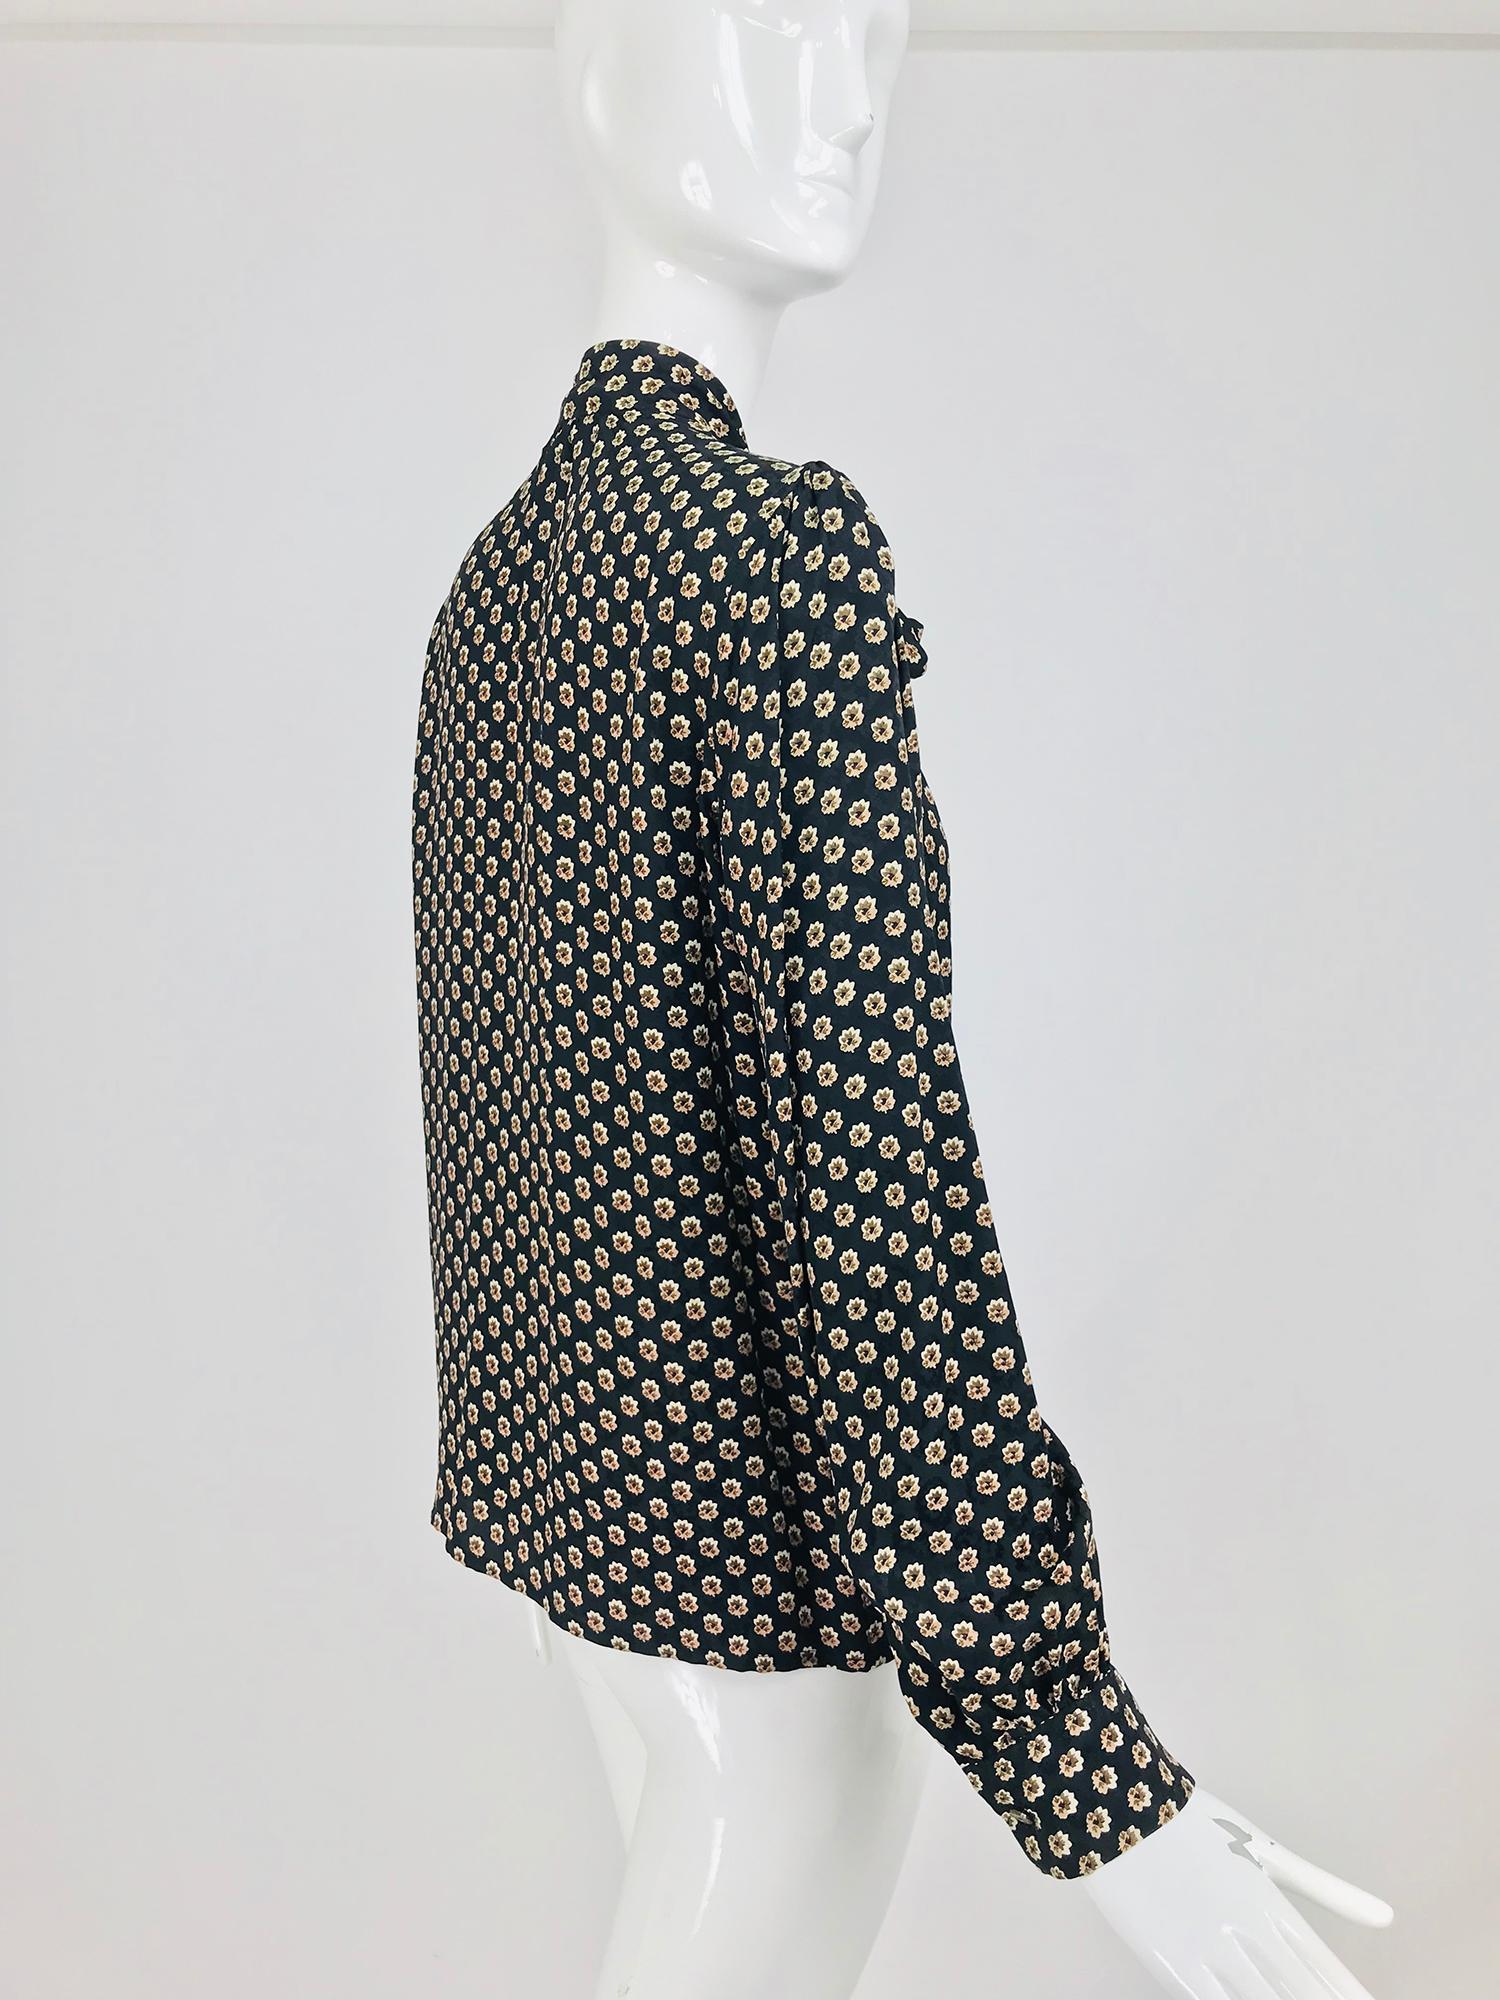 Yves Saint Laurent Provincial Print Silk Bow Neck Blouse 1970s 3